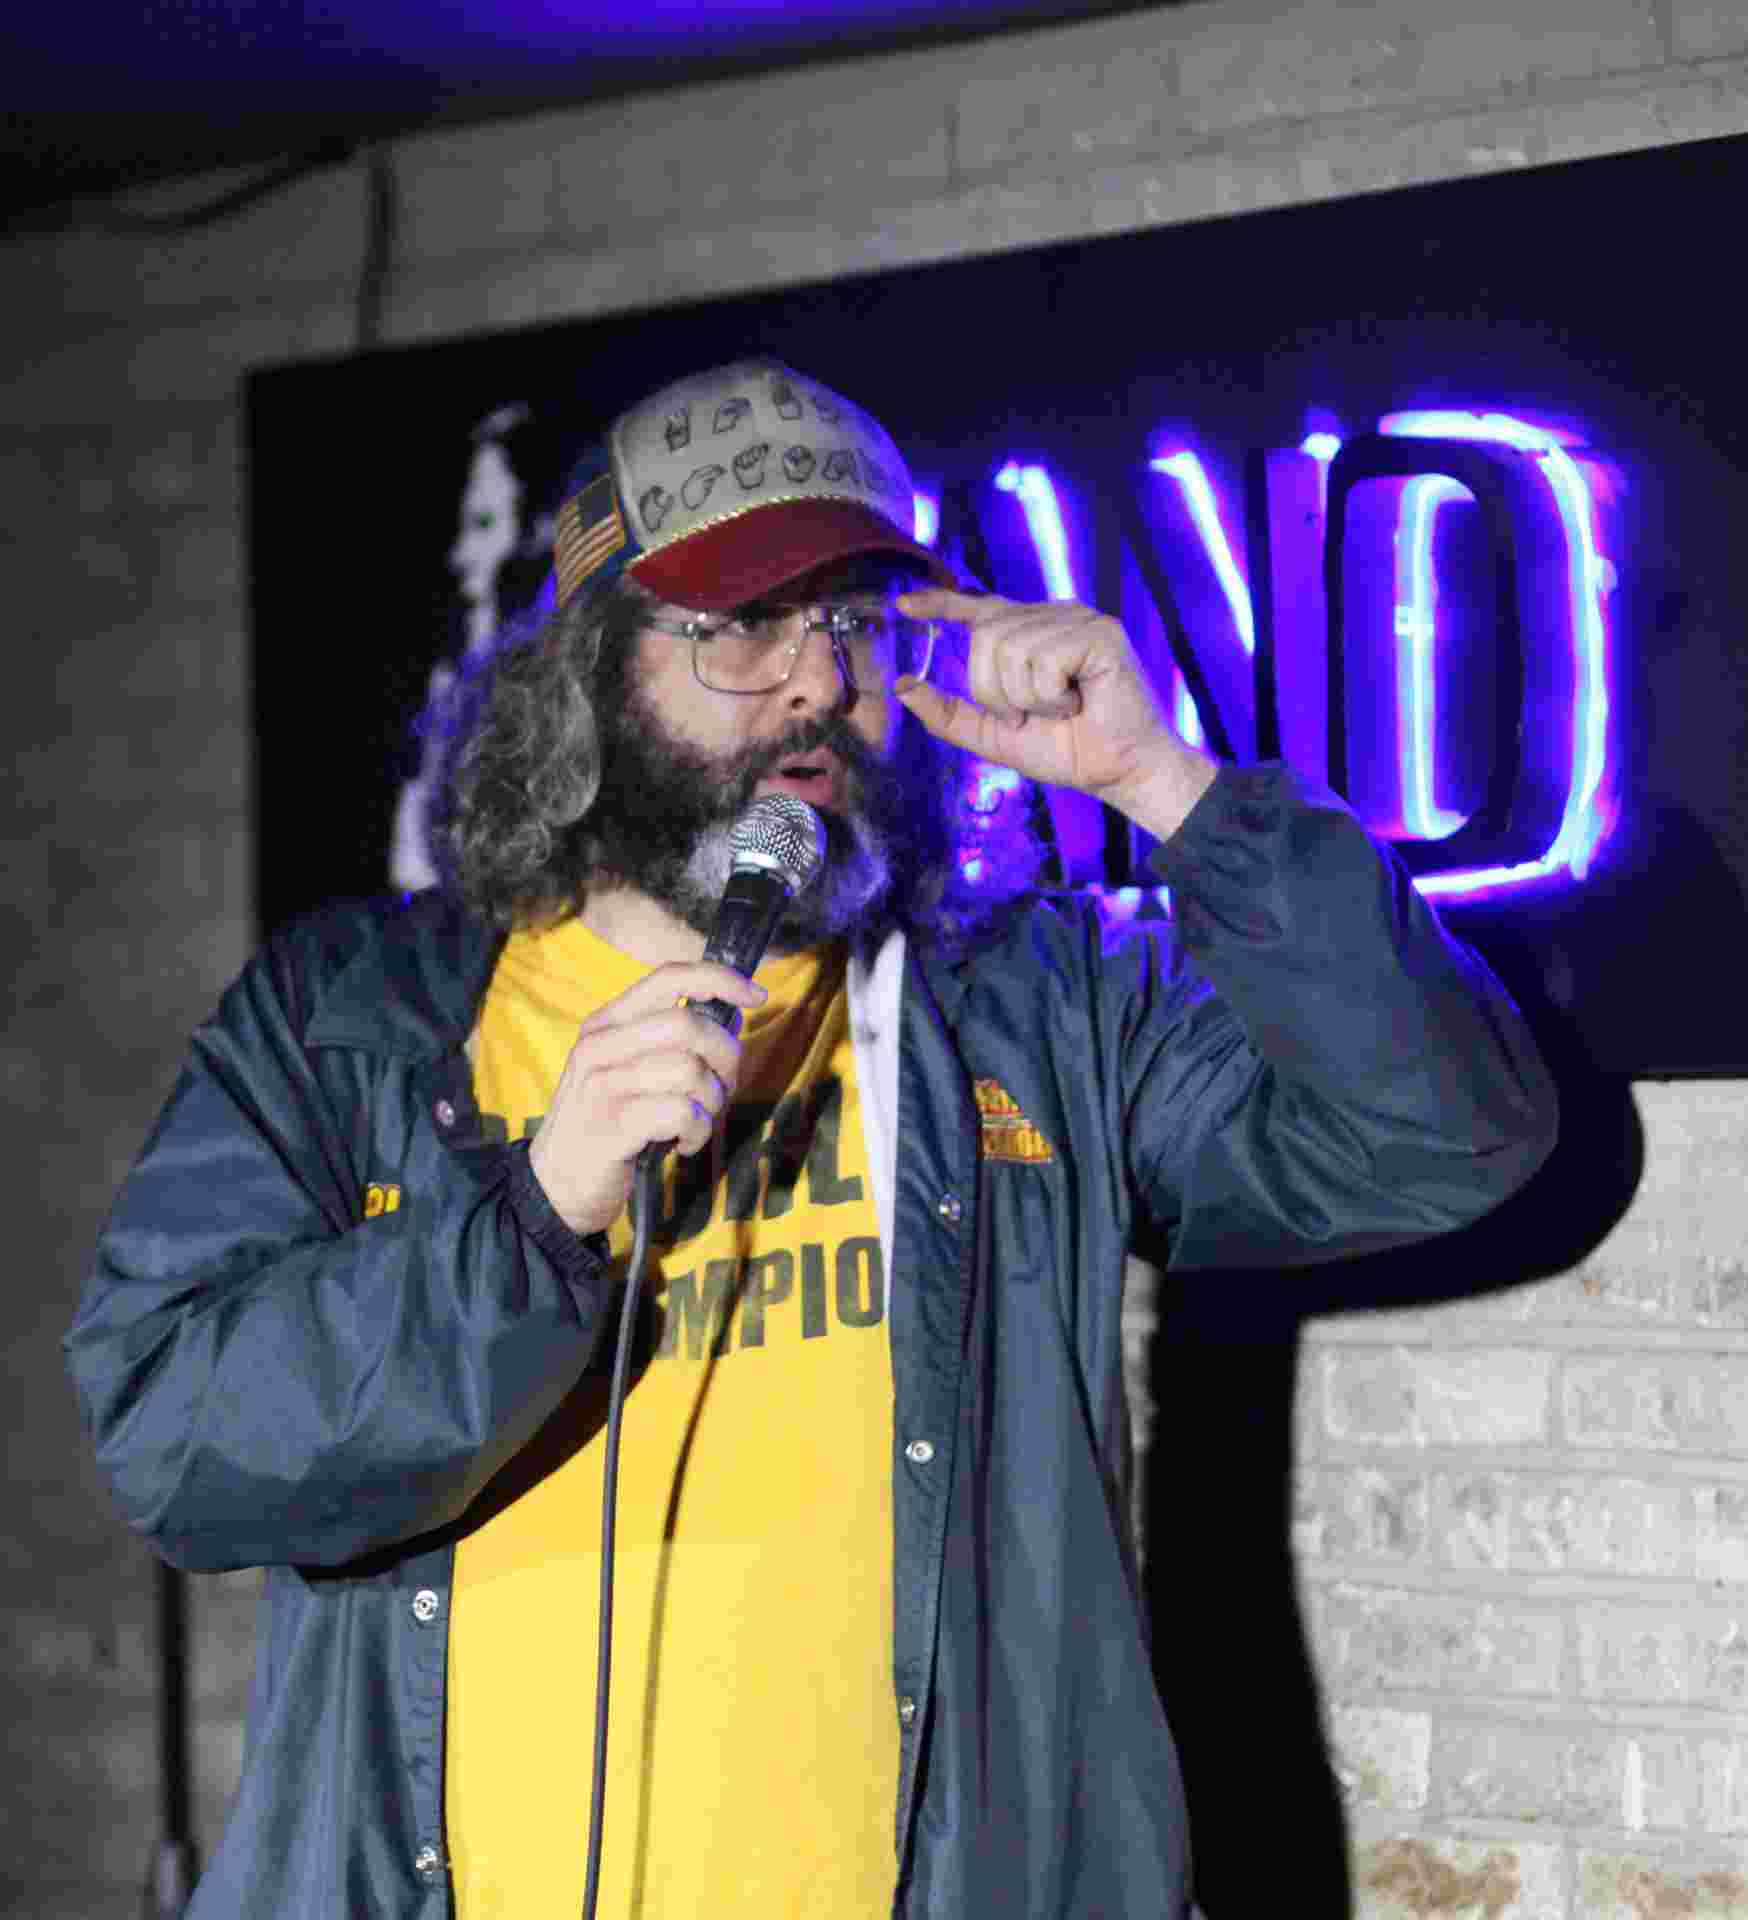 Image of stand-up comedian, Judah Friedlander